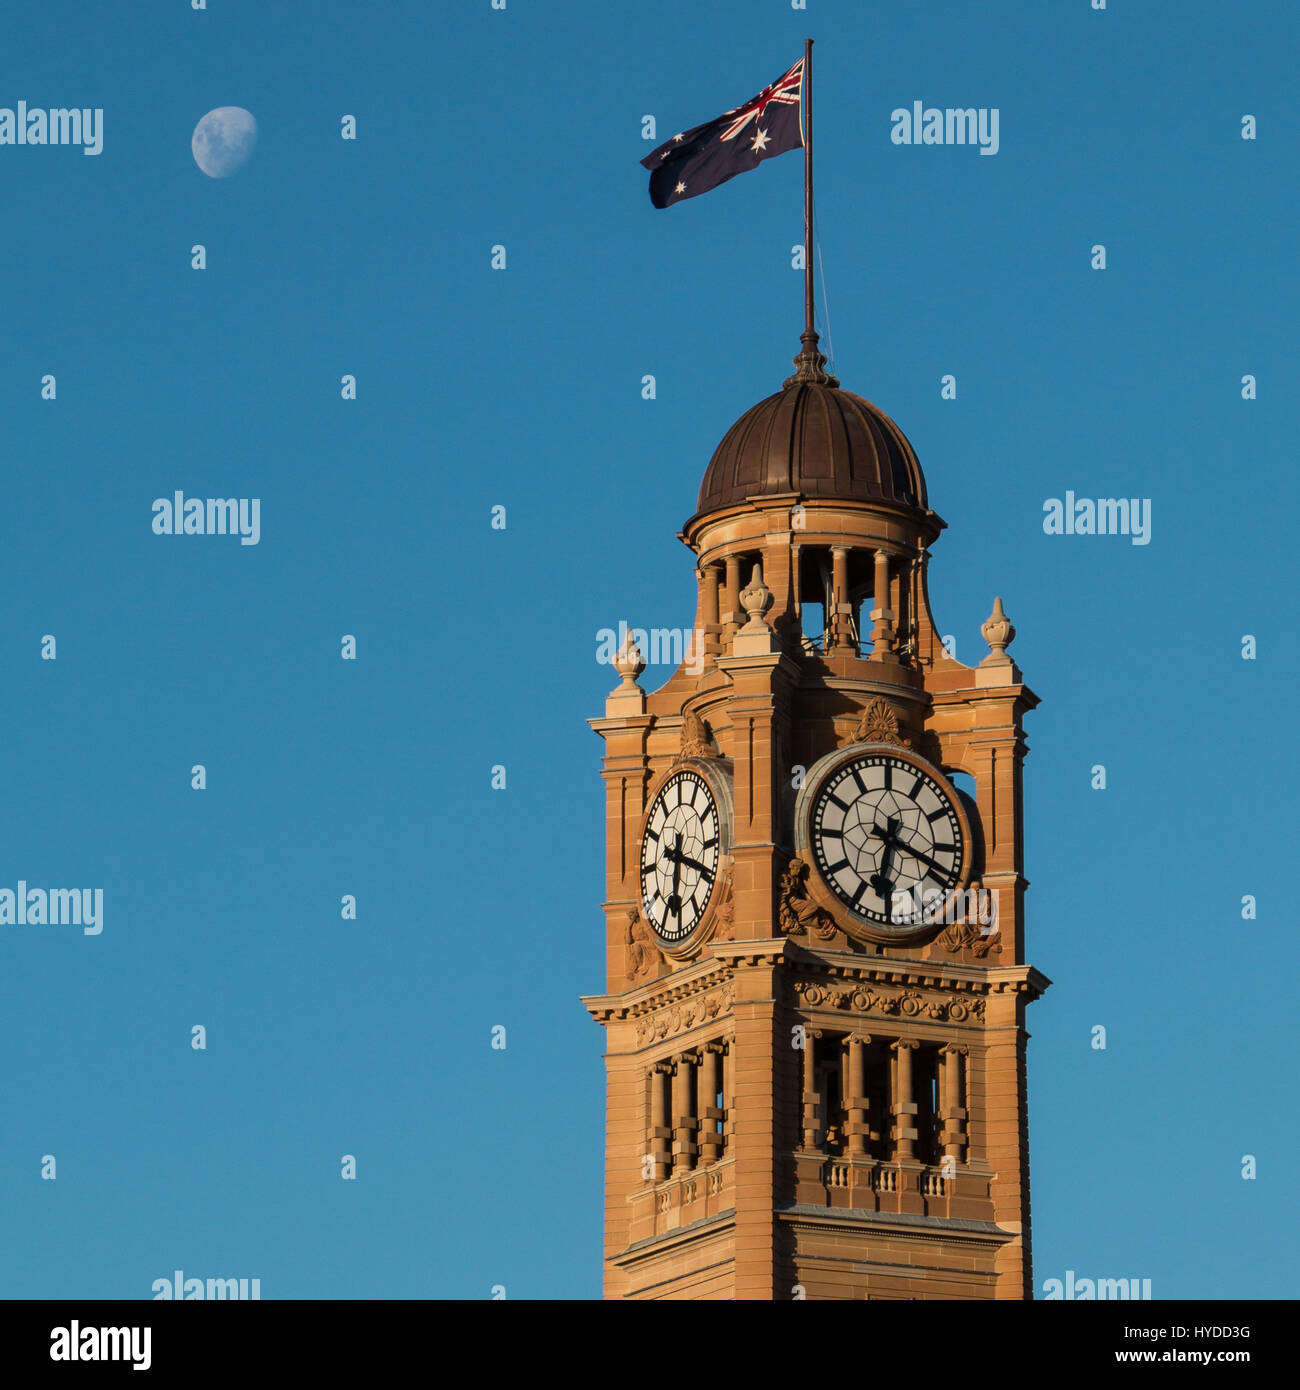 La tour de l'horloge de la Gare Centrale de Sydney avec le drapeau australien et la lune Banque D'Images